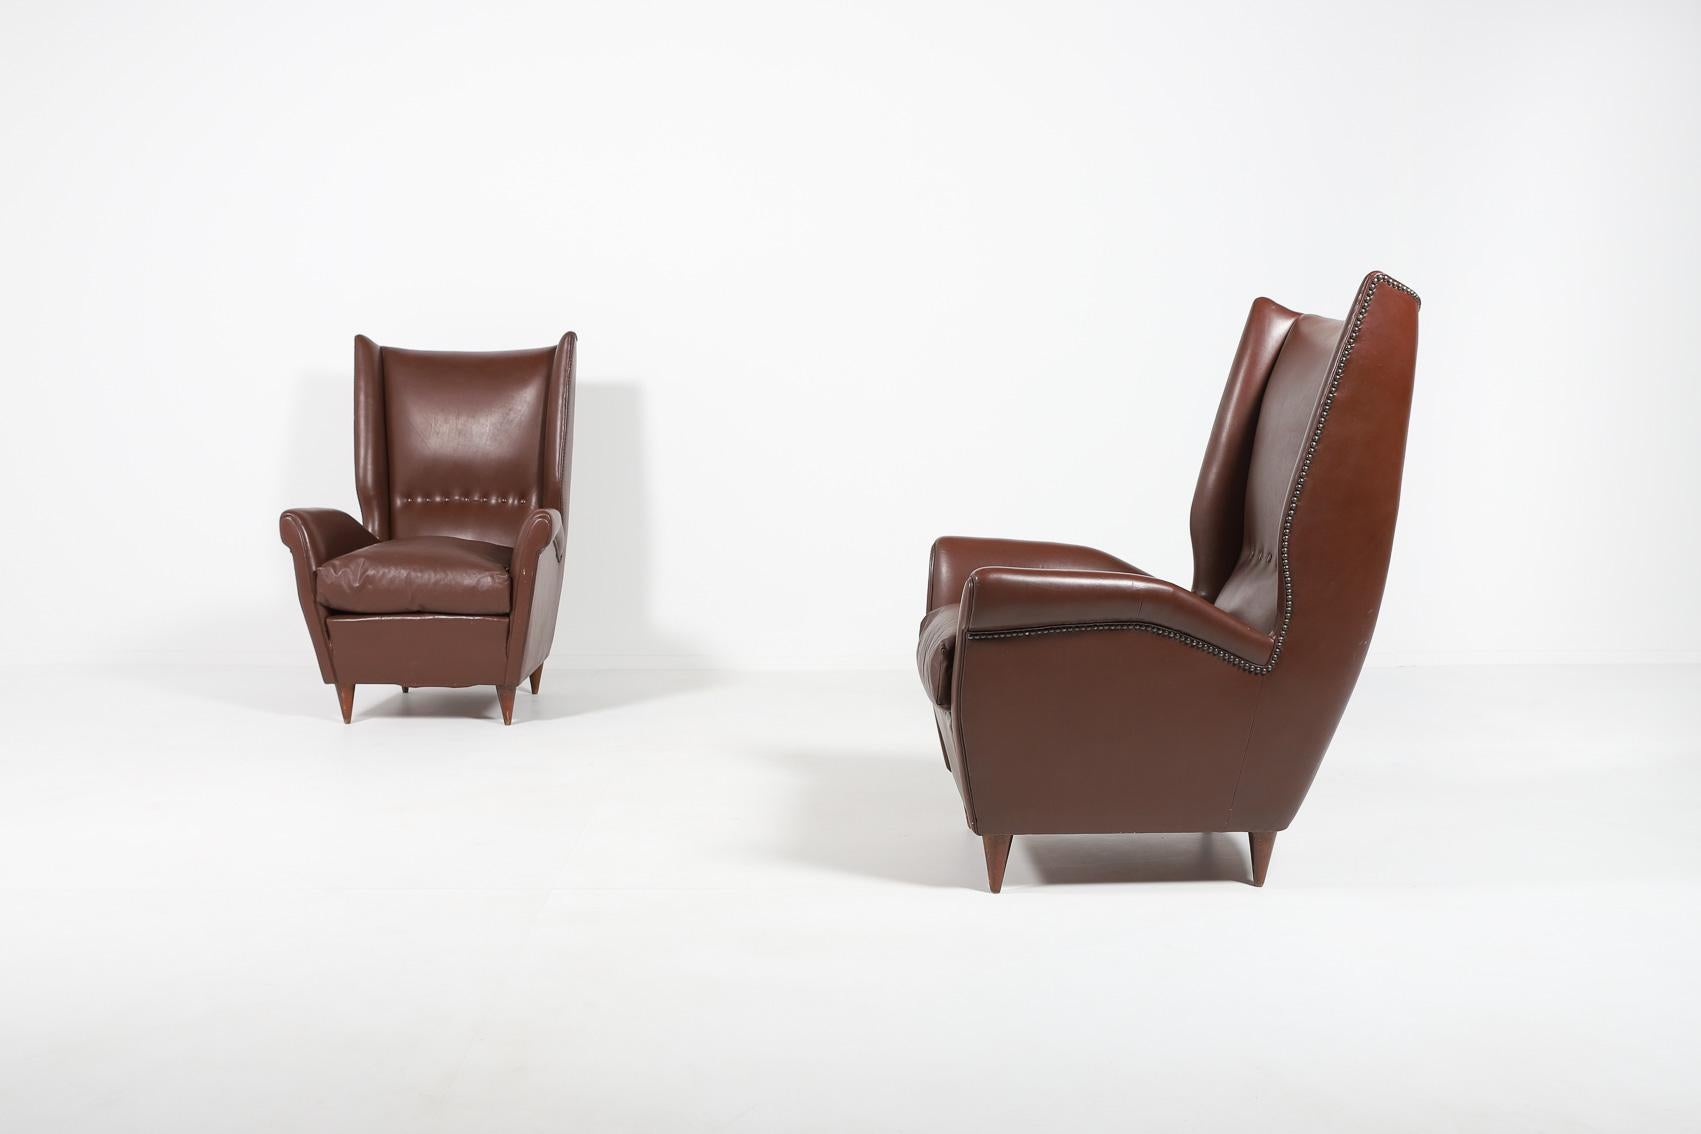 Paire de 2 spectaculaires fauteuils de salon en cuir marron sur pieds en bois teinté, coussins d'assise détachés. La maîtrise de l'architecture italienne et de l'icône du design Gio Ponti, aristocratique et épurée à la fois.

Condit
Bon, signes